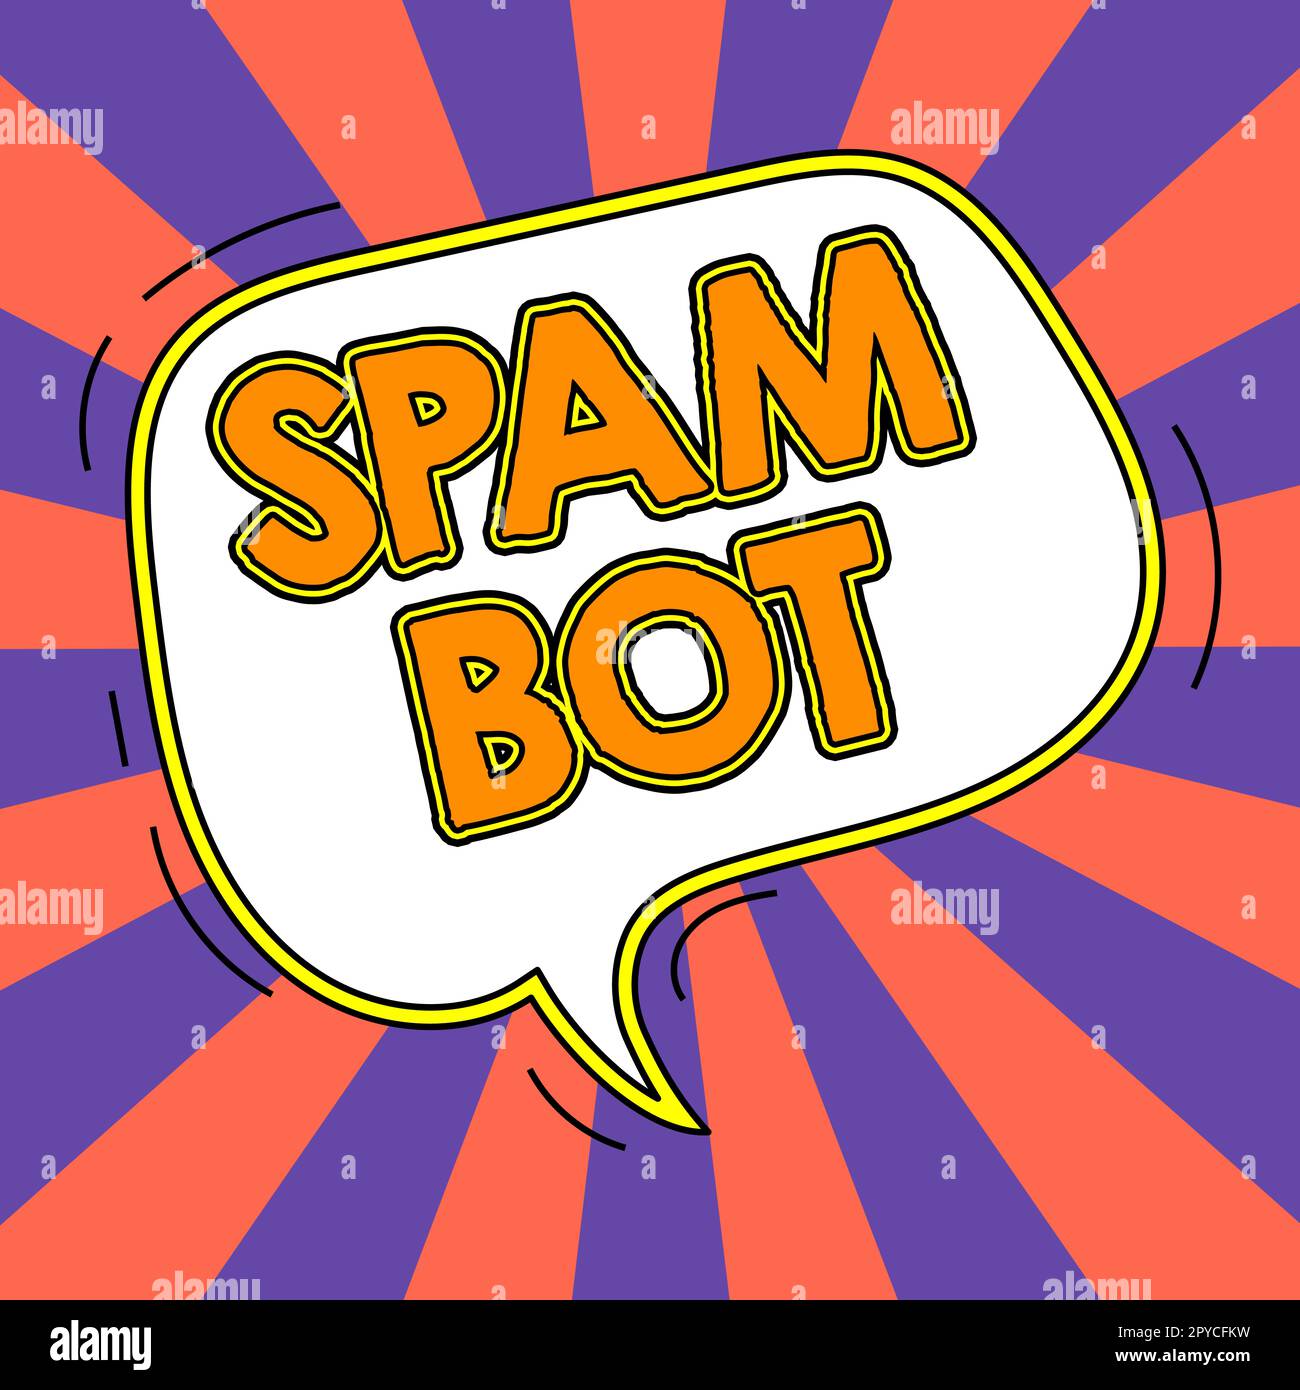 Visualizzazione concettuale Spam Bot. Panoramica aziendale programma autonomo su Internet che invia spam agli utenti Foto Stock